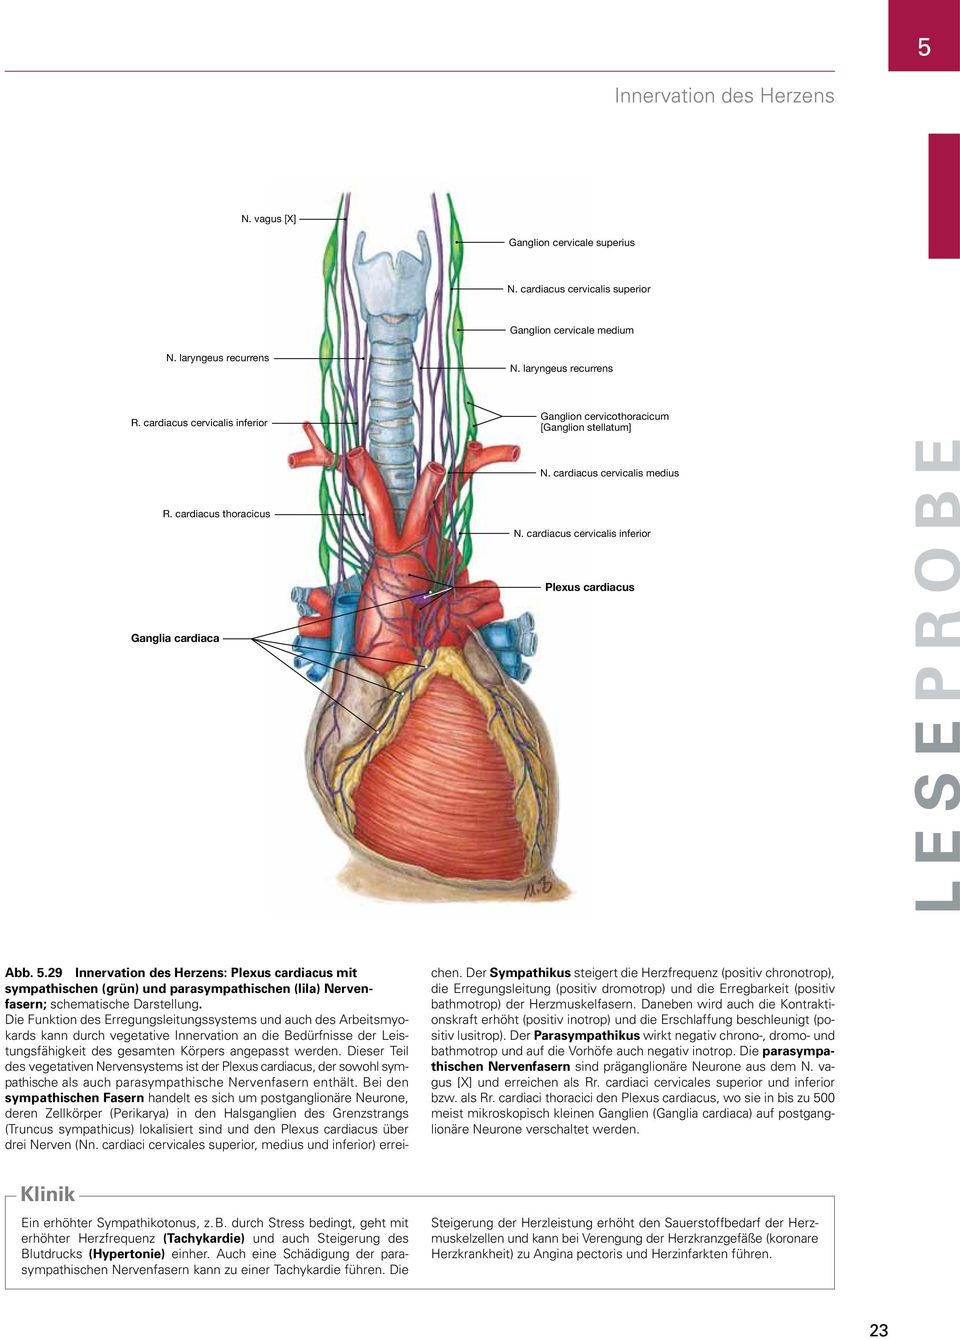 cardiacus cervicalis inferior Plexus cardiacus Ganglia cardiaca Abb. 5.